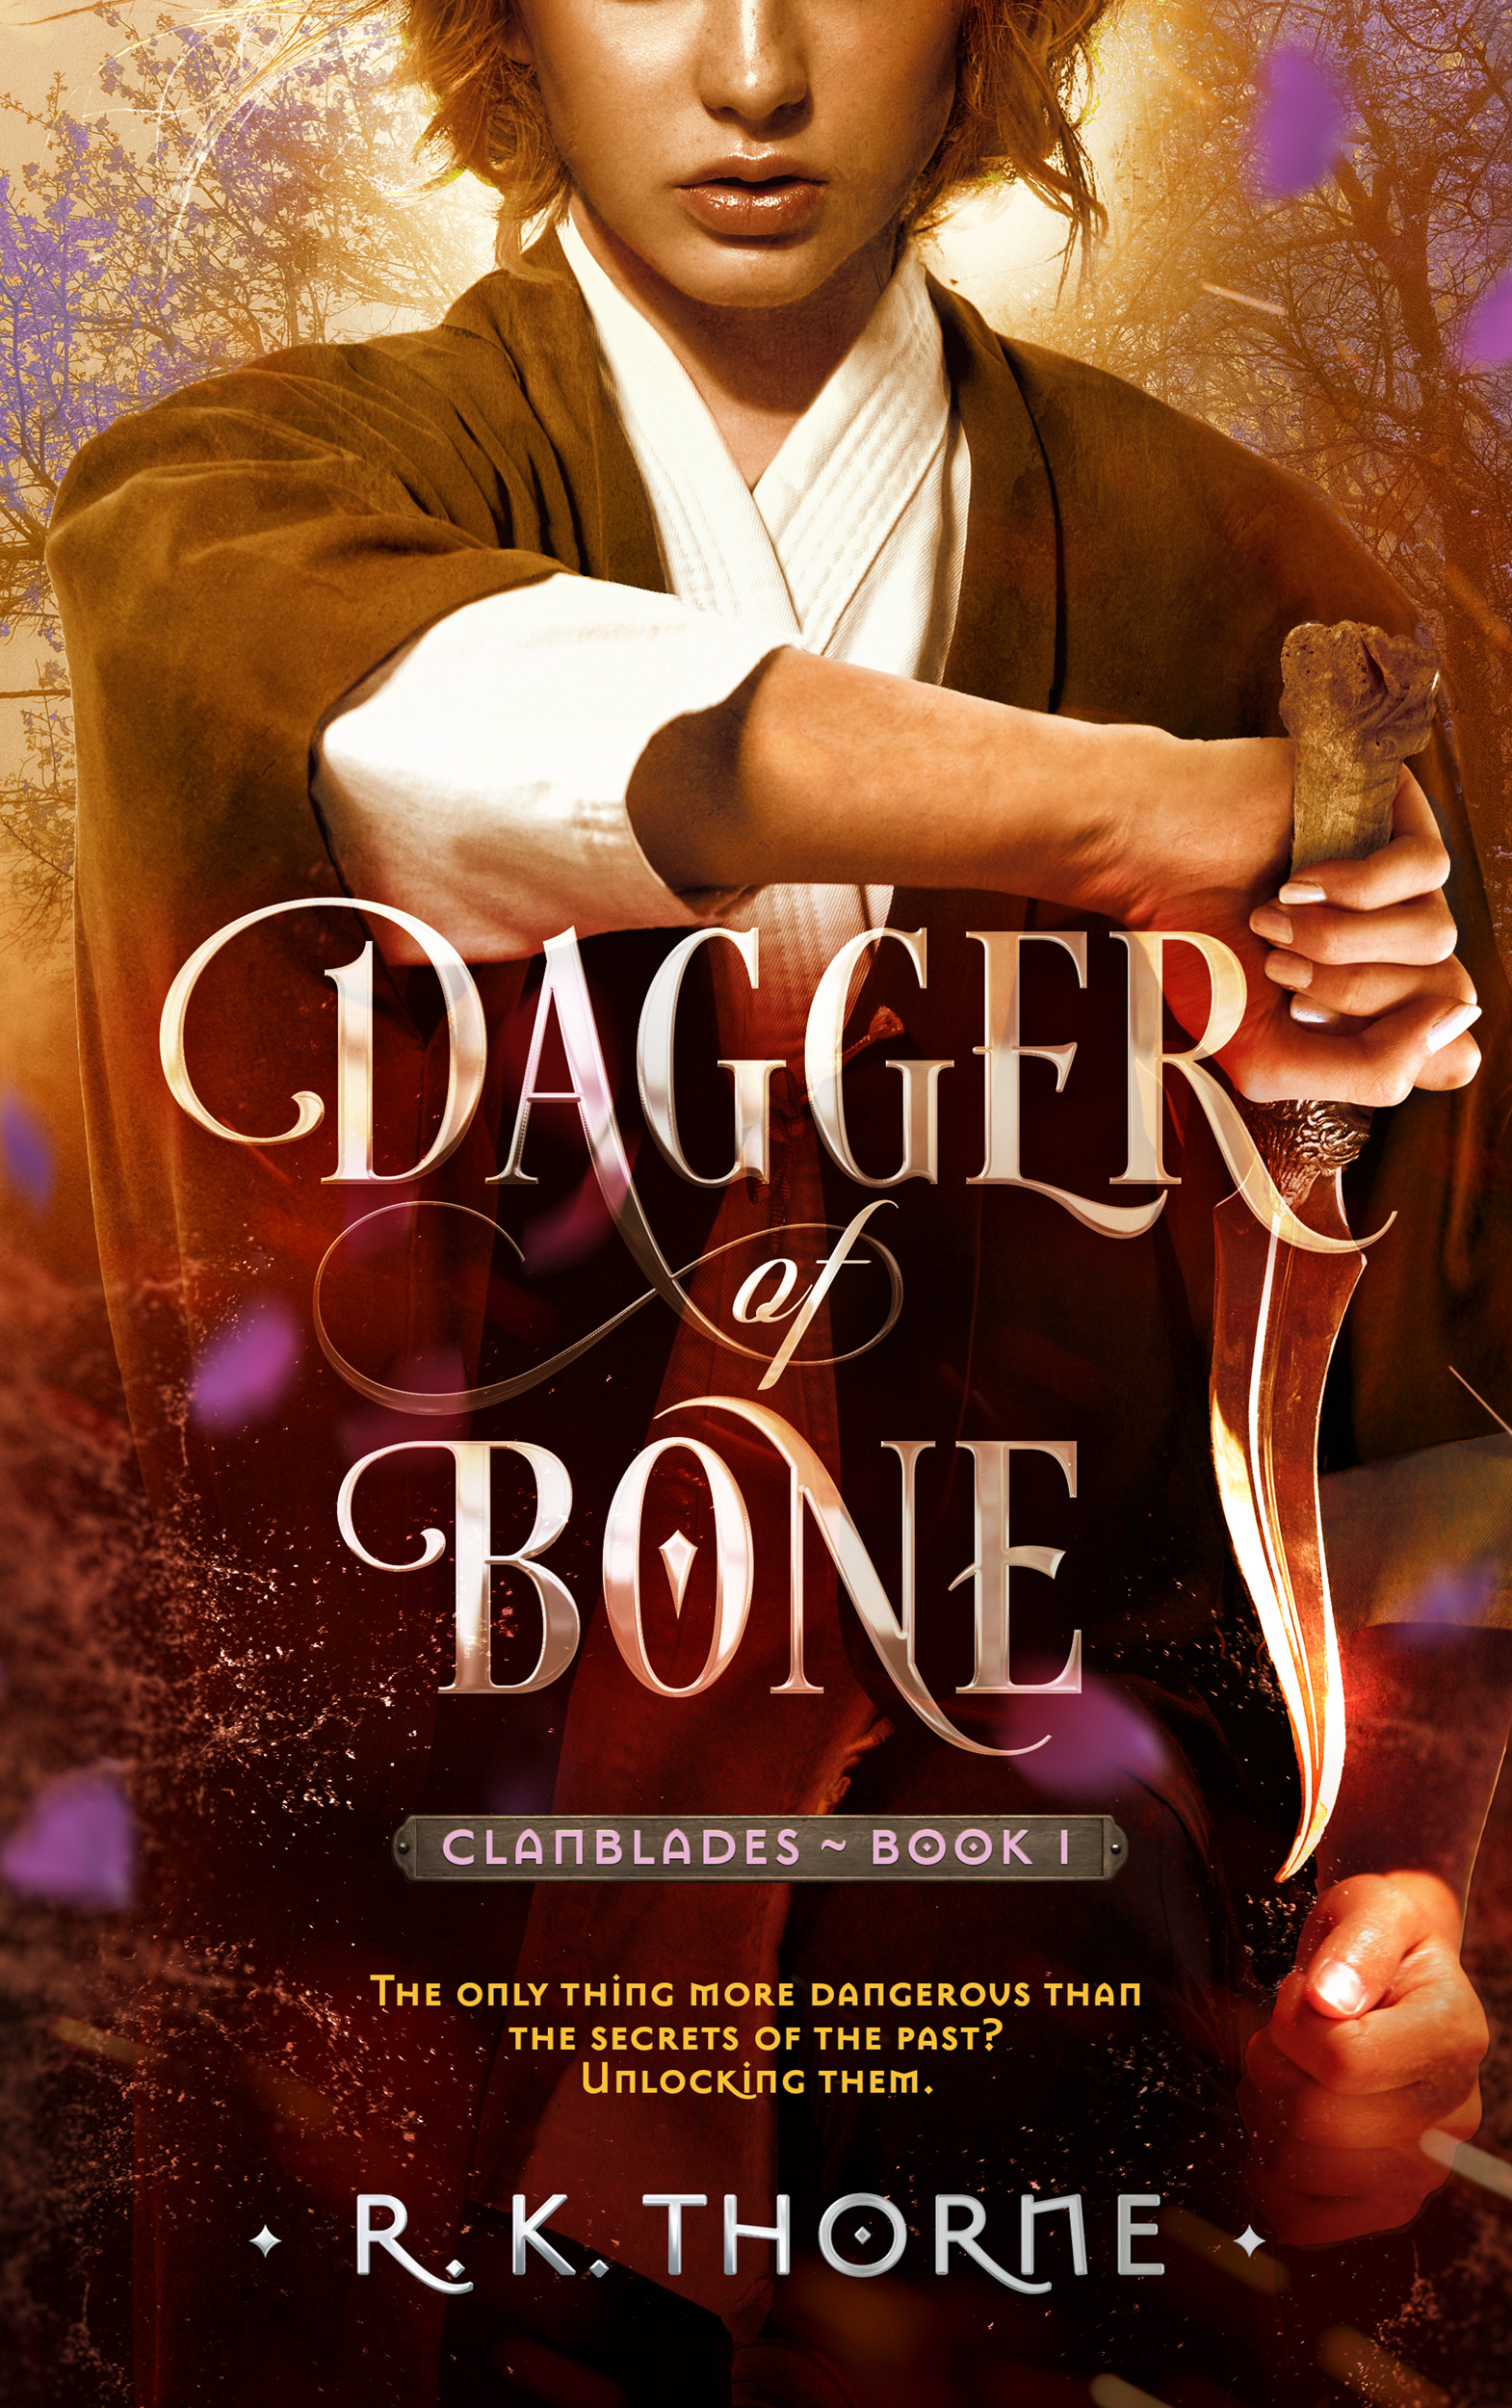 Dagger of Bone book cover reveal